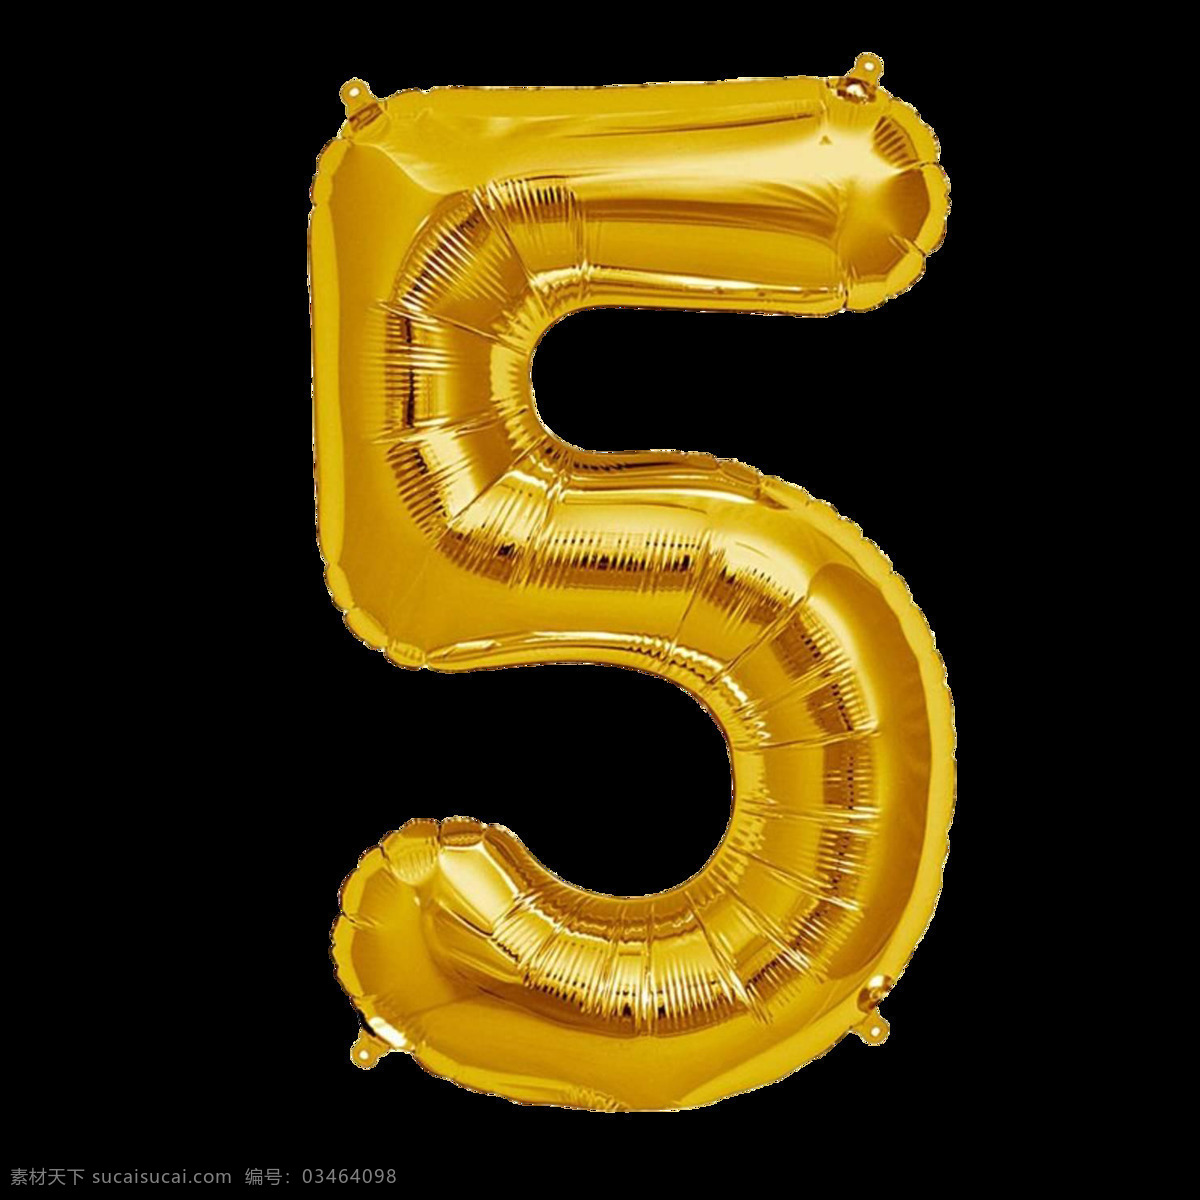 金色气球字5 金色气球字 气球字 气球数字 铝膜气球字母 装饰字 派对气球 气球文字 字母气球 铝箔气球 3d设计 3d作品